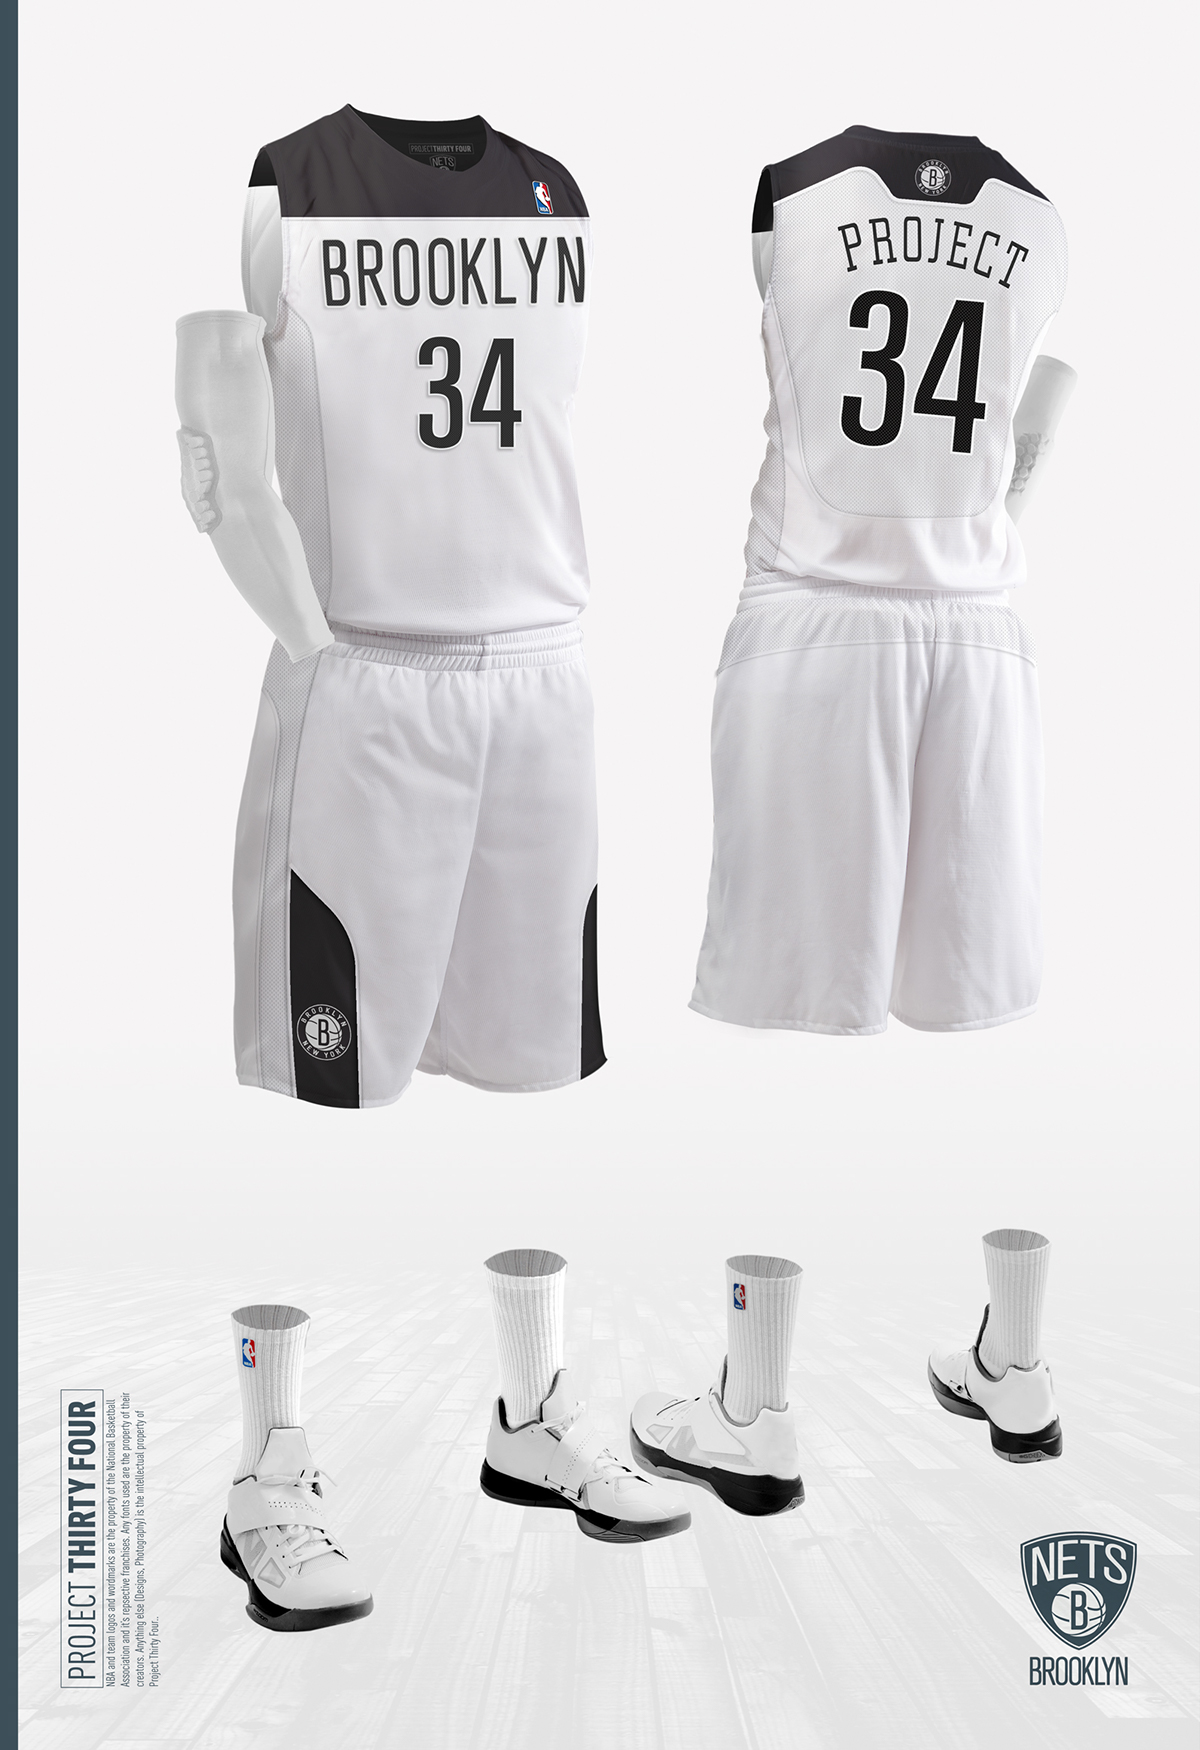 NBA Brooklyn Nets Sports apparel jersey